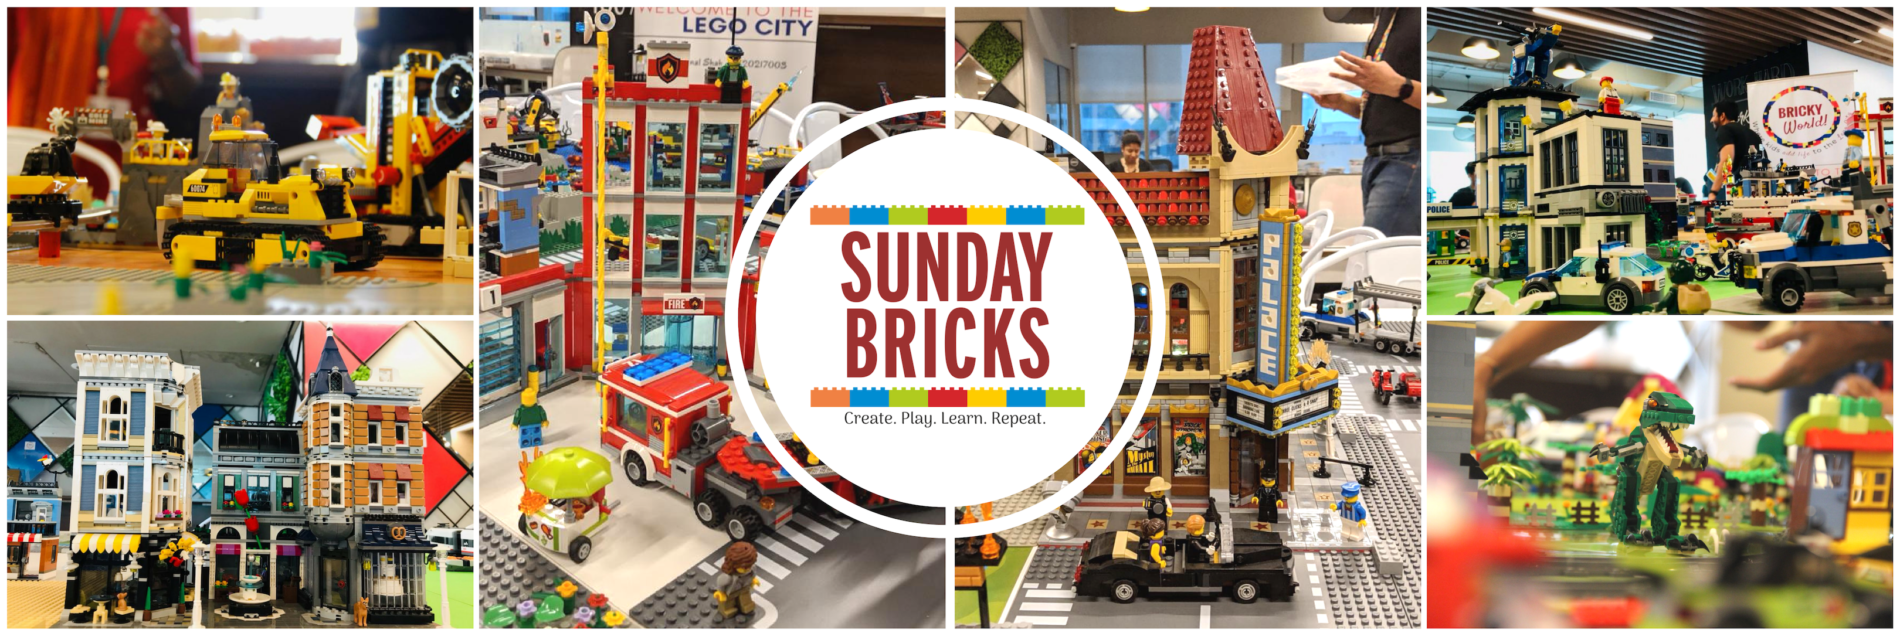 Sunday Bricks – Workshops with LEGO® Bricks